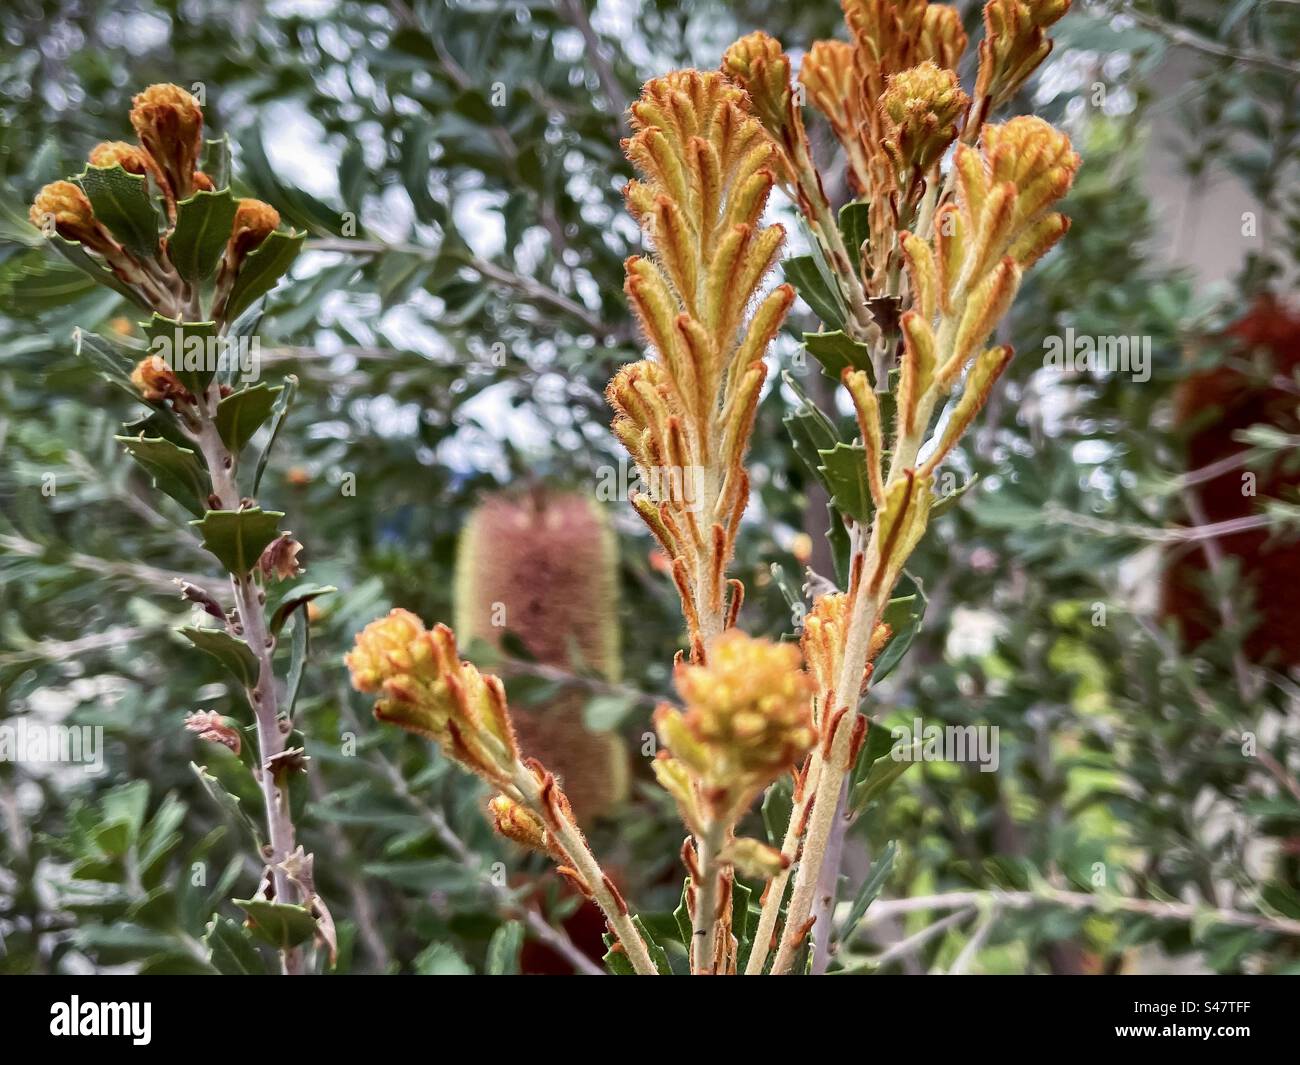 Nahaufnahme von gelben Blütenknospen und roten Kegelblüten von Banksia praemorsa/geschnittenem Blatt Banksia Strauch, einer australischen einheimischen Pflanze im Frühling. Fokus auf den Vordergrund. Stockfoto